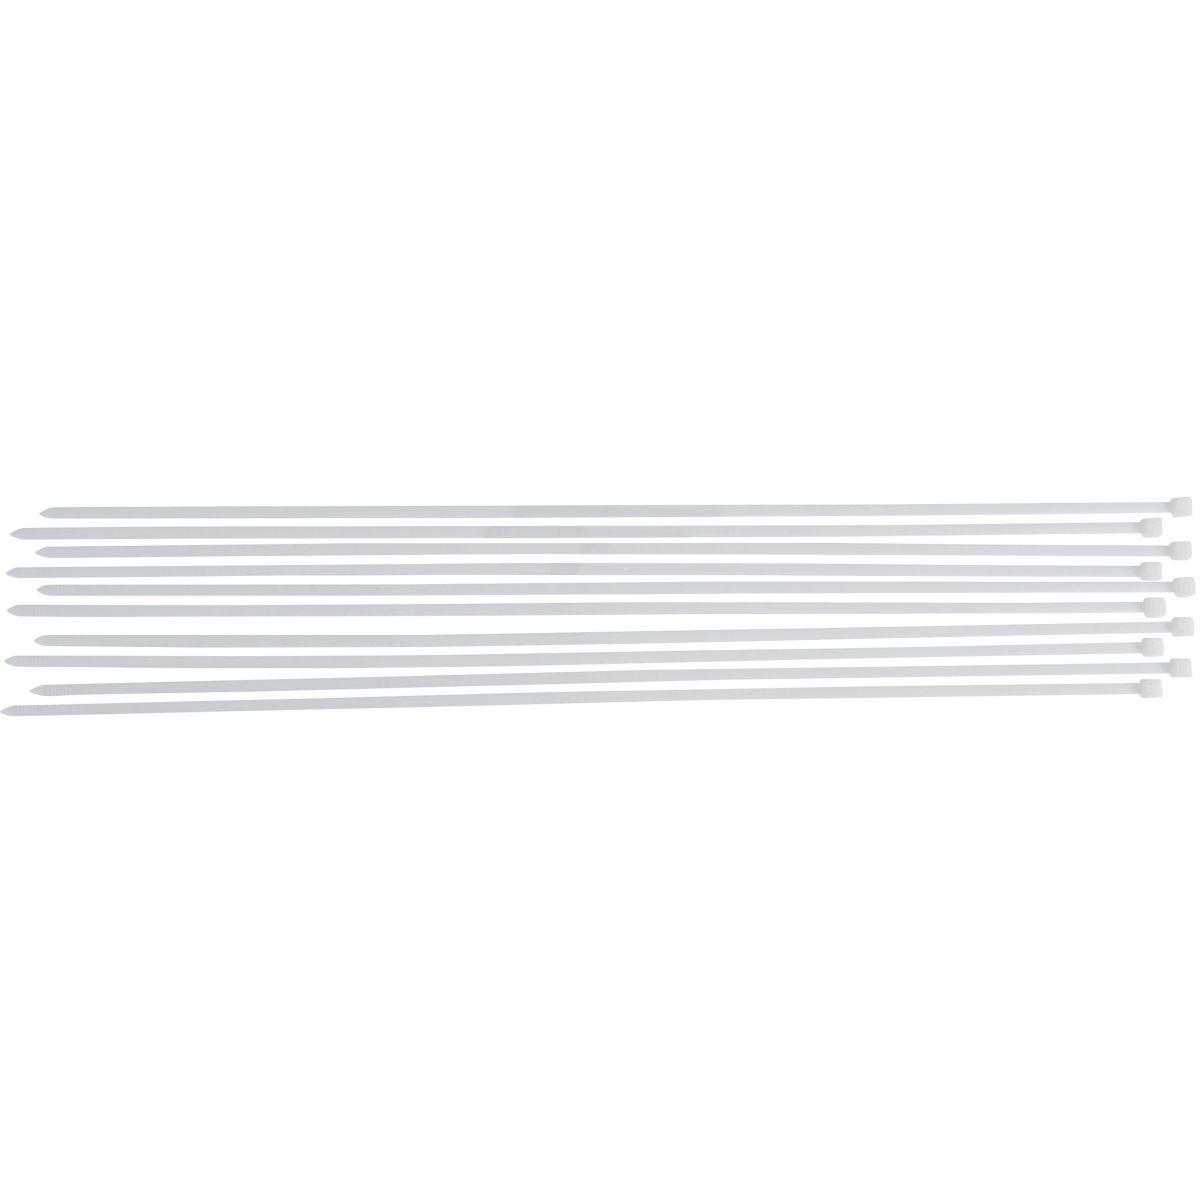 Cable Tie Assortment | white | 8.0 x 800 mm | 10 pcs.